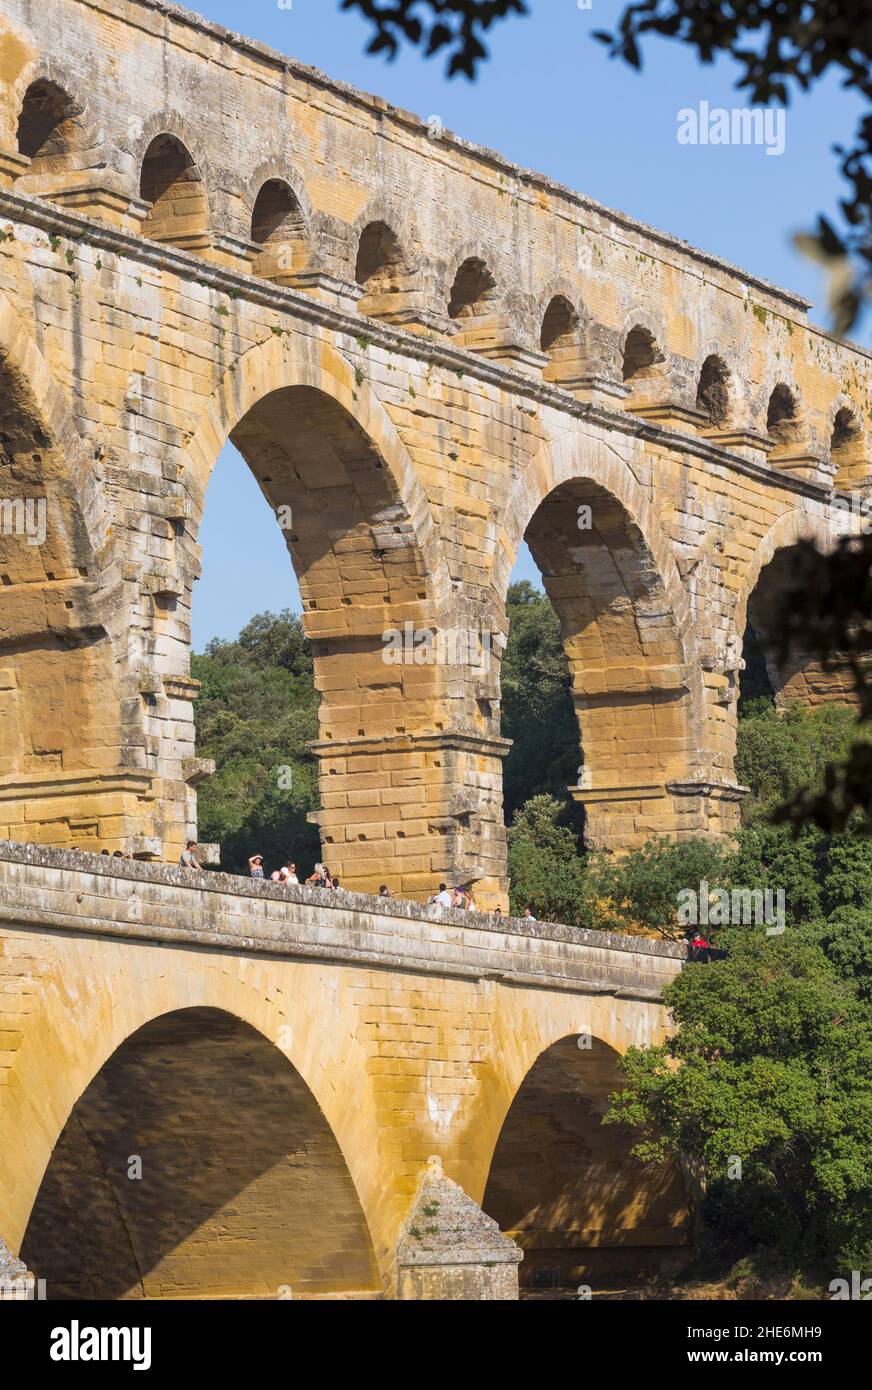 Pont du Gard, vers Pont-du-Gard, département du Gard, Languedoc-Roussillon, France.Aqueduc romain du premier siècle traversant la rivière Gardon.Pont du Gard i Banque D'Images